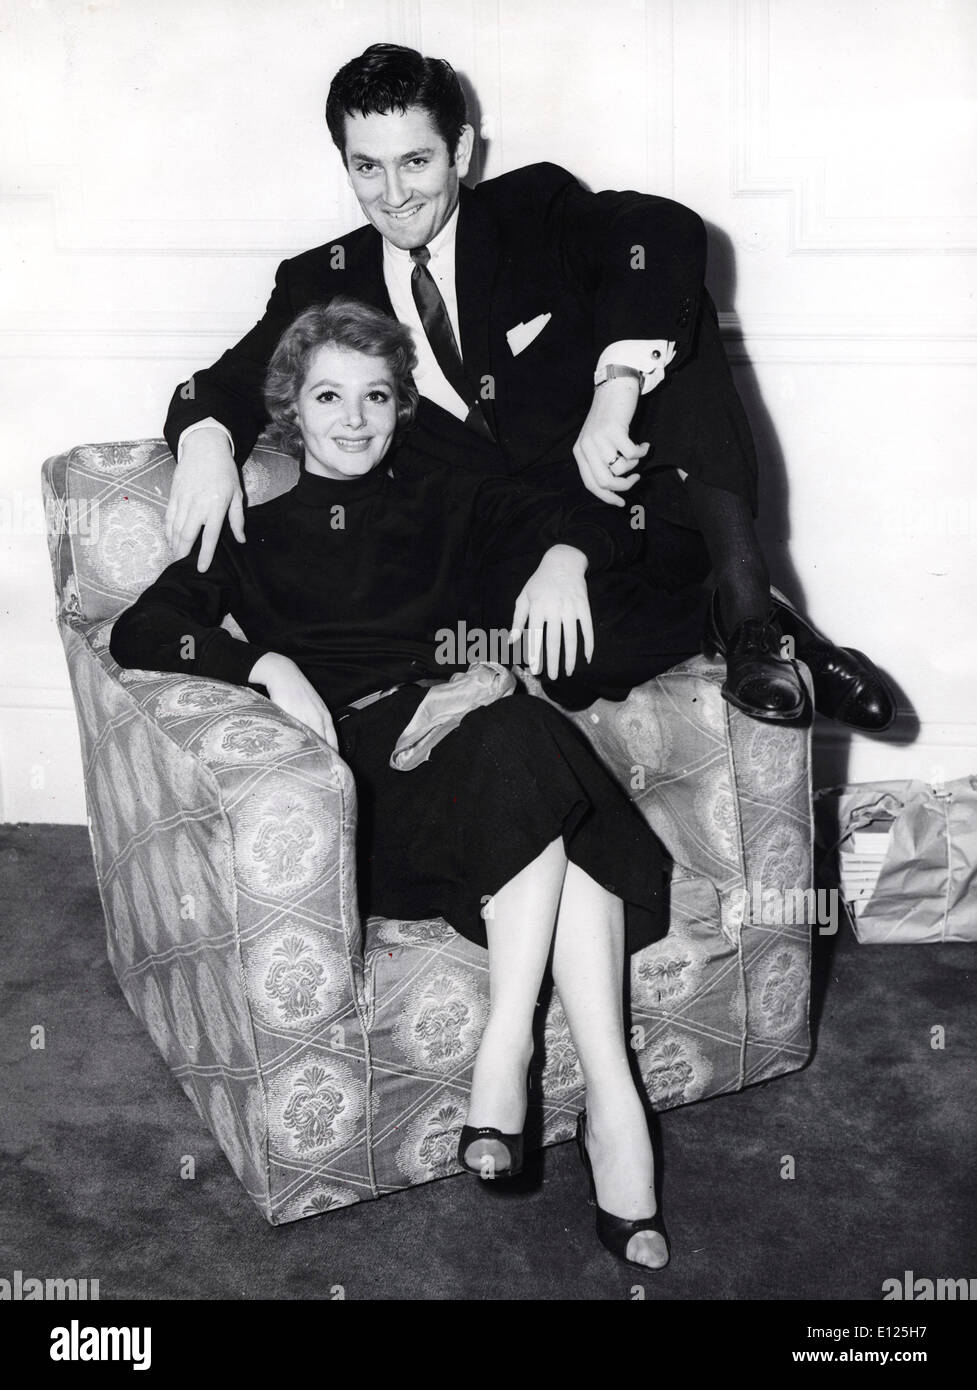 Nov 29, 2004; Los Angeles, CA, Stati Uniti d'America; File Foto: 1955 con DORIS KENYON. Attore JOHN D. BARRYMORE noto per la sua acqua potabile, il consumo di droga e i comportamenti abusivi e il padre assente del film di star Drew Barrymore, è morto oggi a Los Angeles. Egli è stato 72. JOHN D. BARRYMORE è nato a Beverly Hills il 4 giugno 1932. Sua madre è stata attrice Dolores Costello. Ha iniziato la sua carriera mentre un adolescente, apparendo professionalmente prima come John Barrymore Jr e poi come John Drew Barrymore Foto Stock